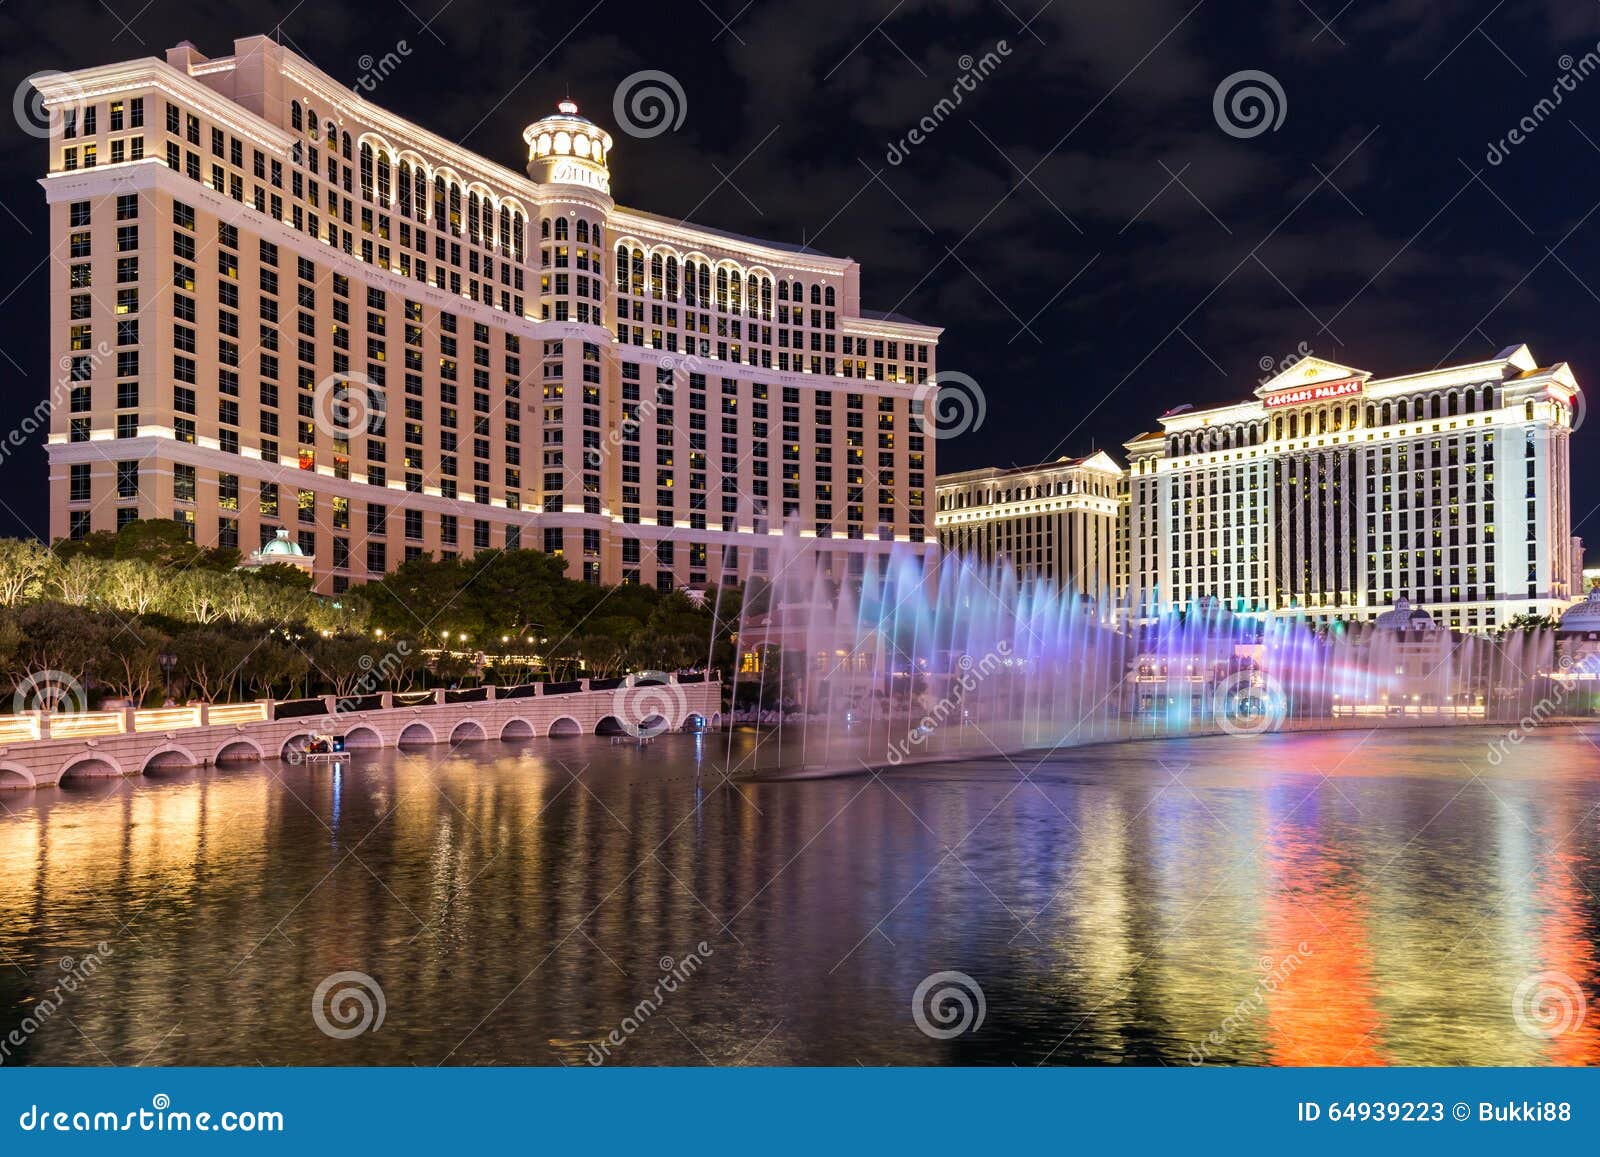 Caesar Palace Las Vegas Shows